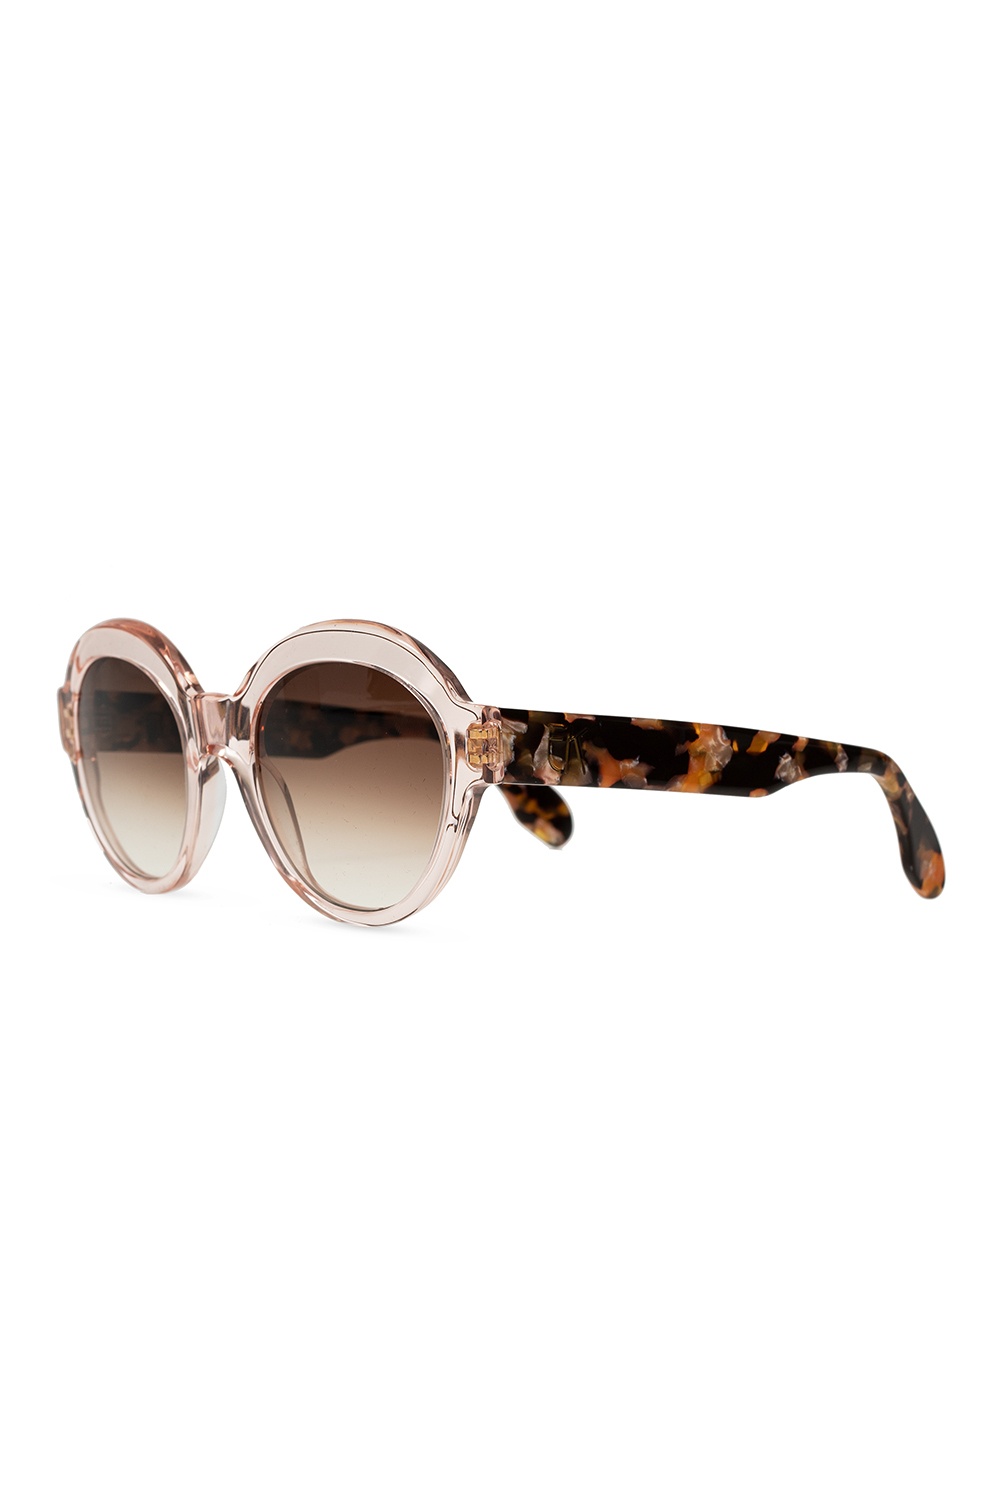 Emmanuelle Khanh Hampton X 46 Sunglasses